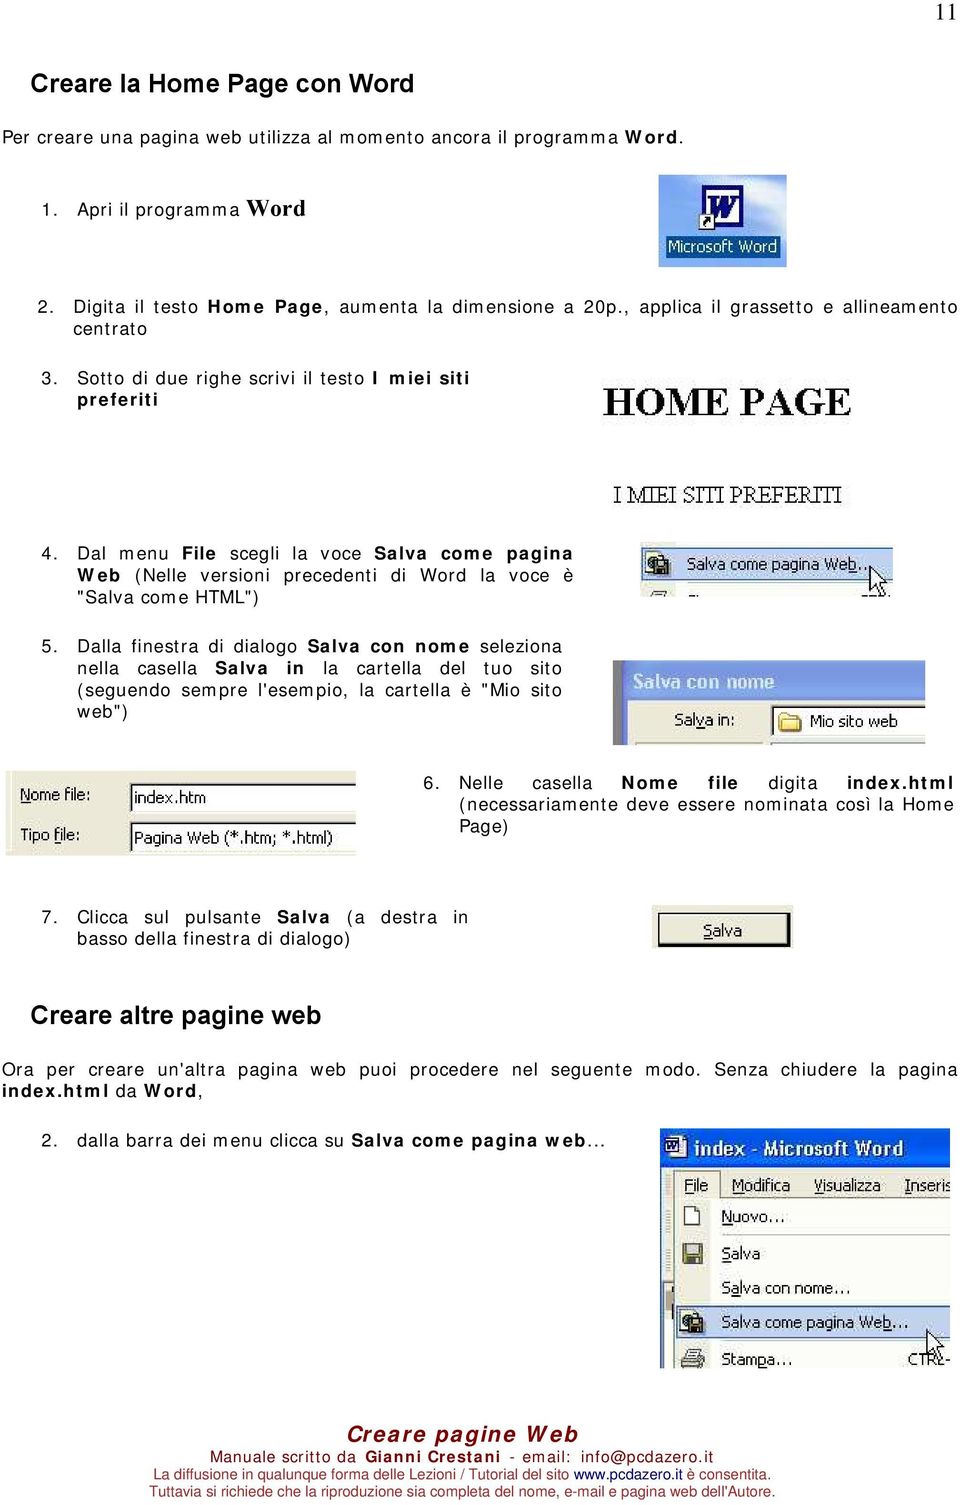 Dal menu File scegli la voce Salva come pagina Web (Nelle versioni precedenti di Word la voce è "Salva come HTML") 5.